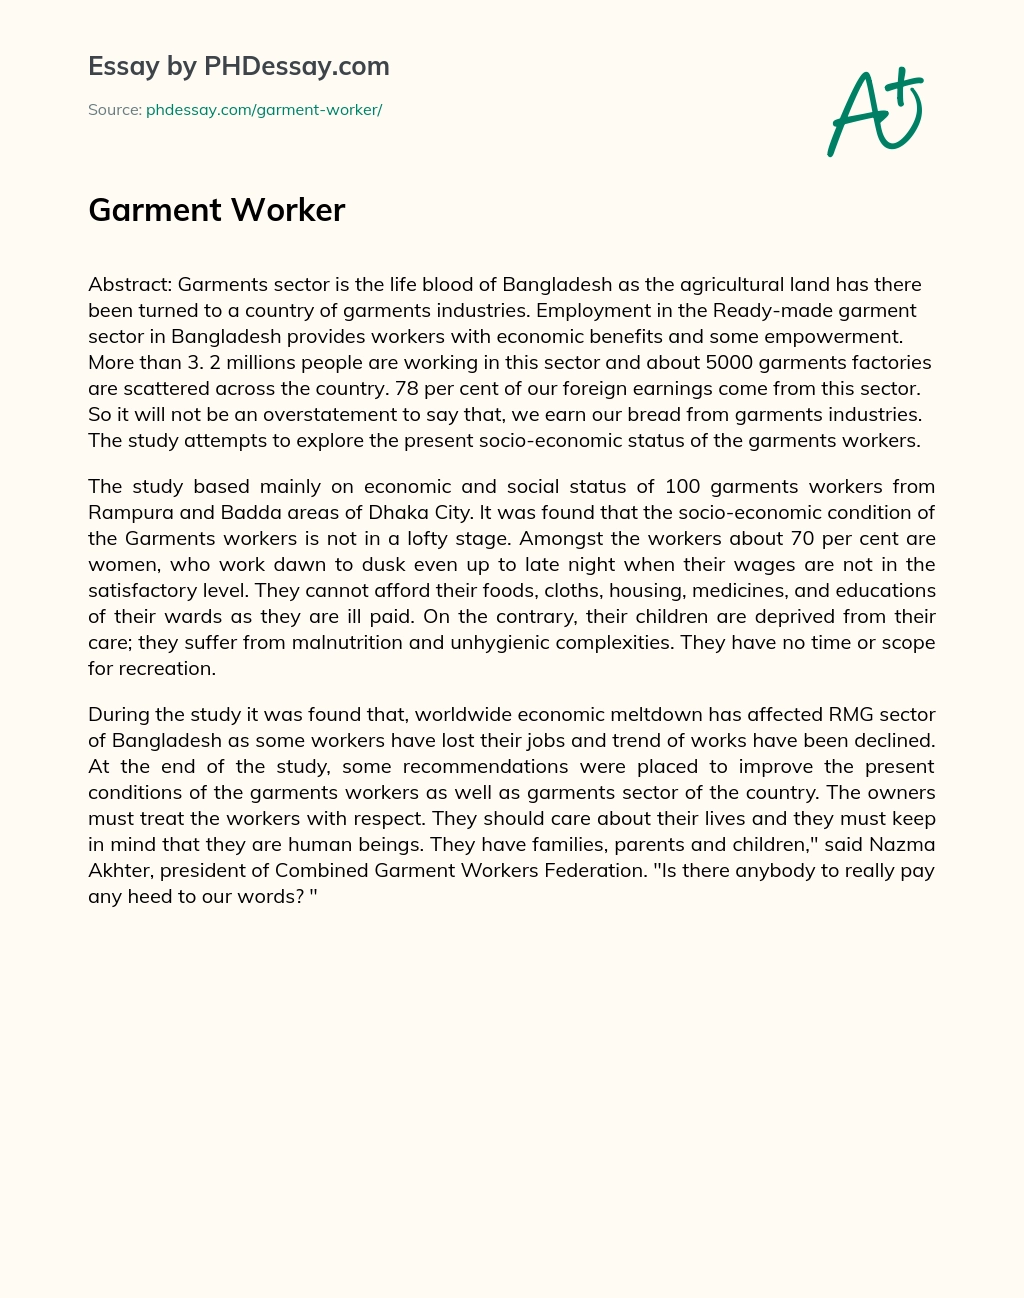 Garment Worker essay